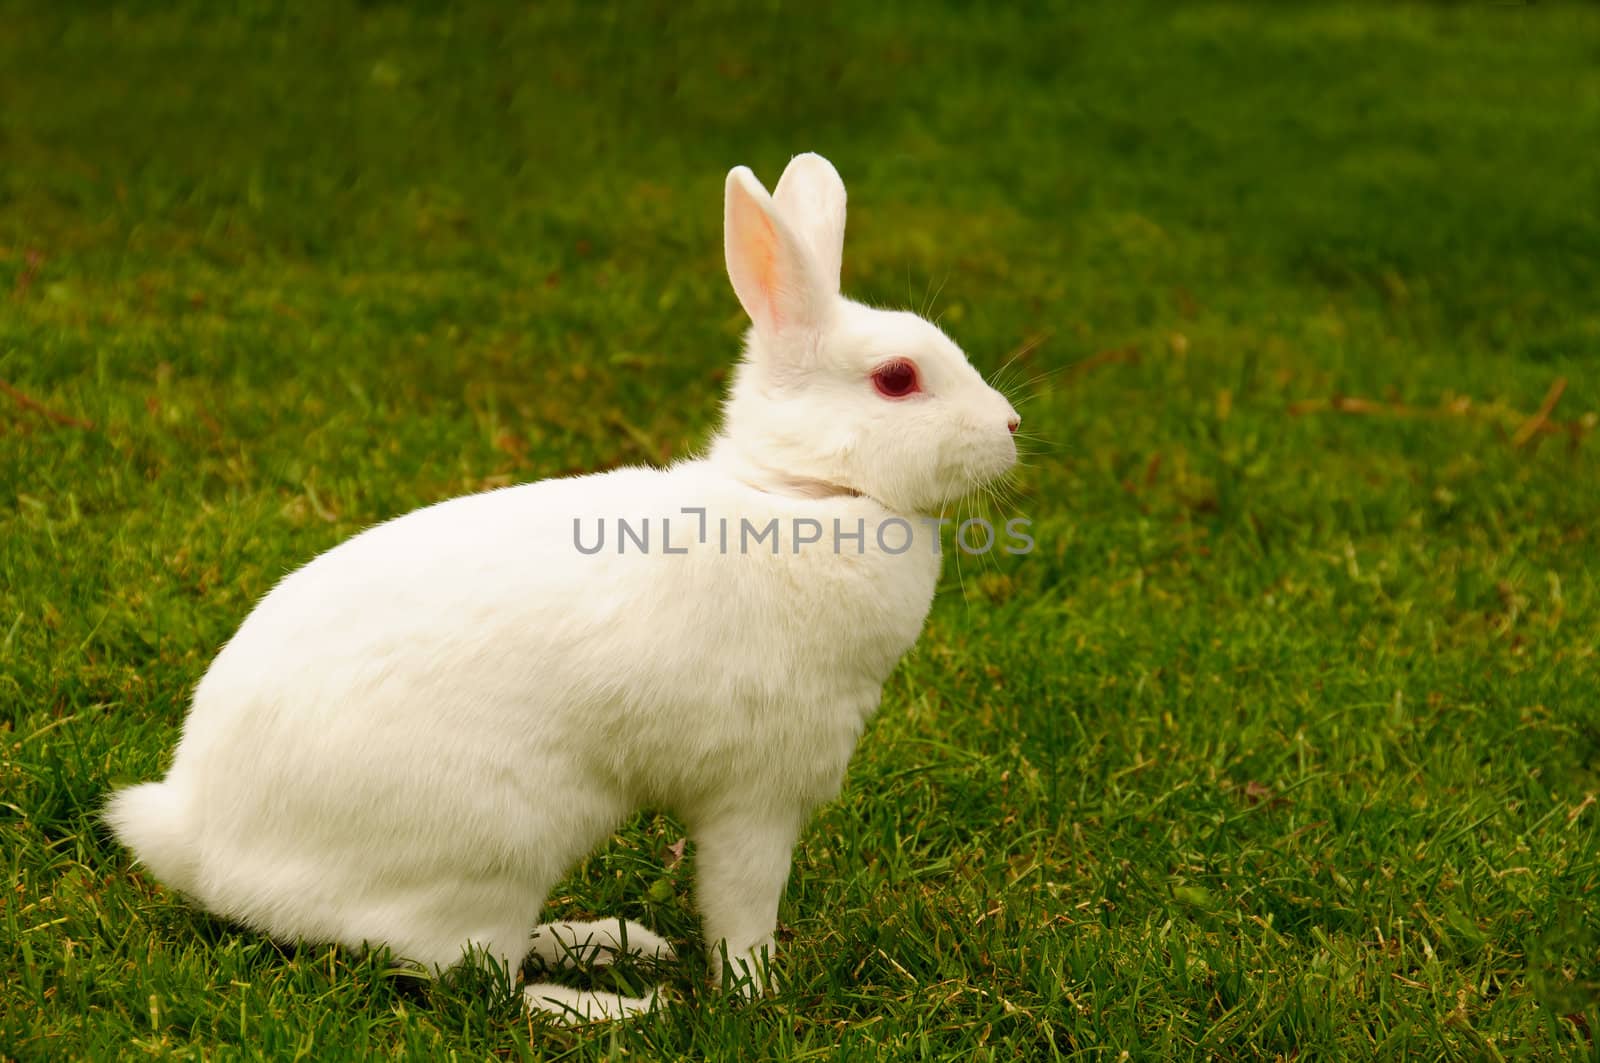 A white rabbit in profile